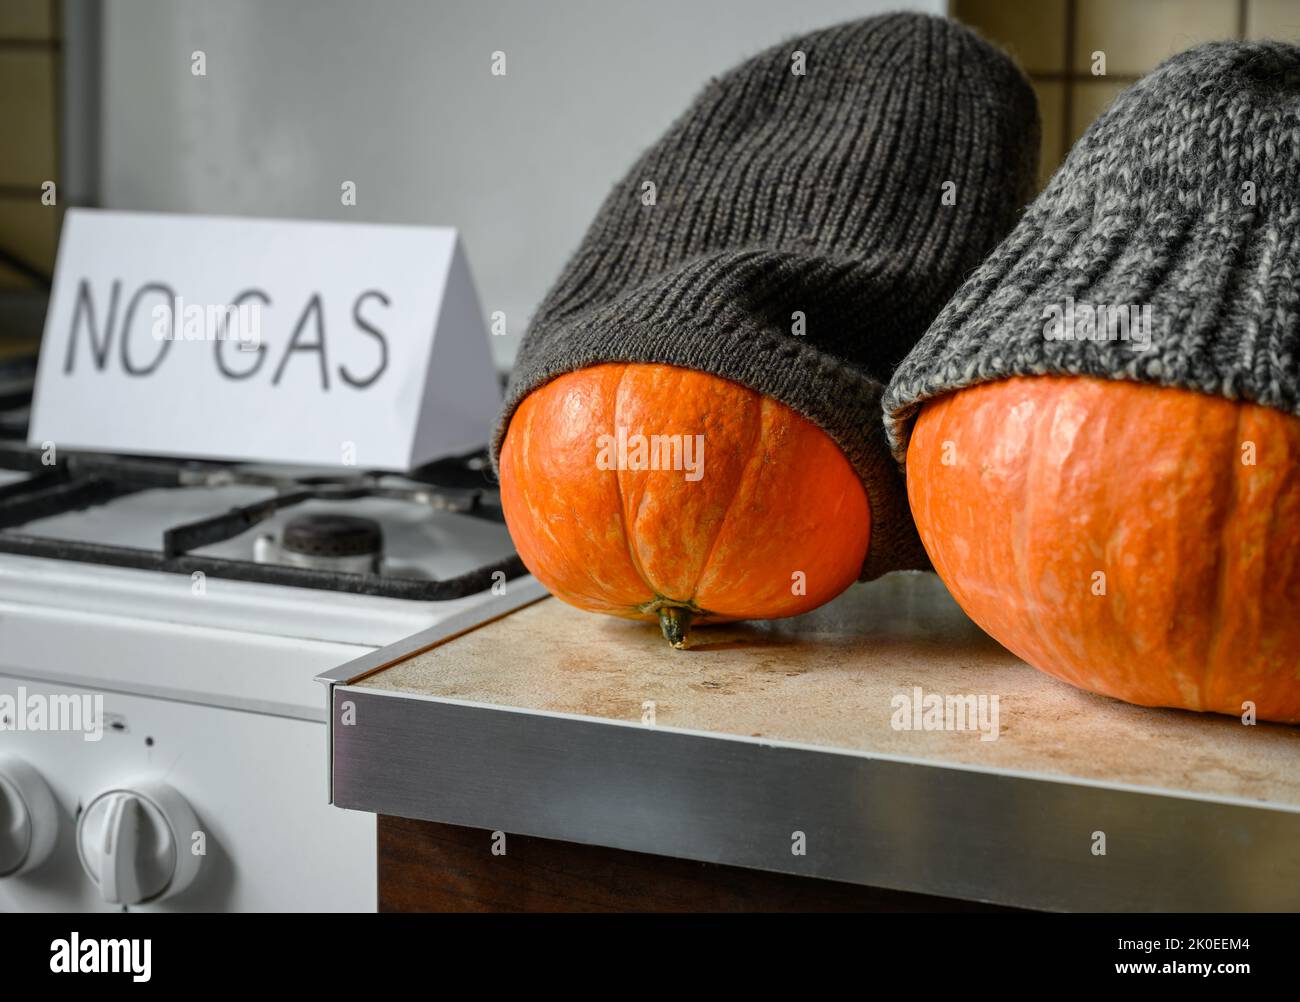 Zucche in inverno cappelli a maglia su Halloween a casa fredda, gas costoso ed elettricità per il riscaldamento, le verdure divertenti sono congelate. Crisi energetica, grazie Foto Stock